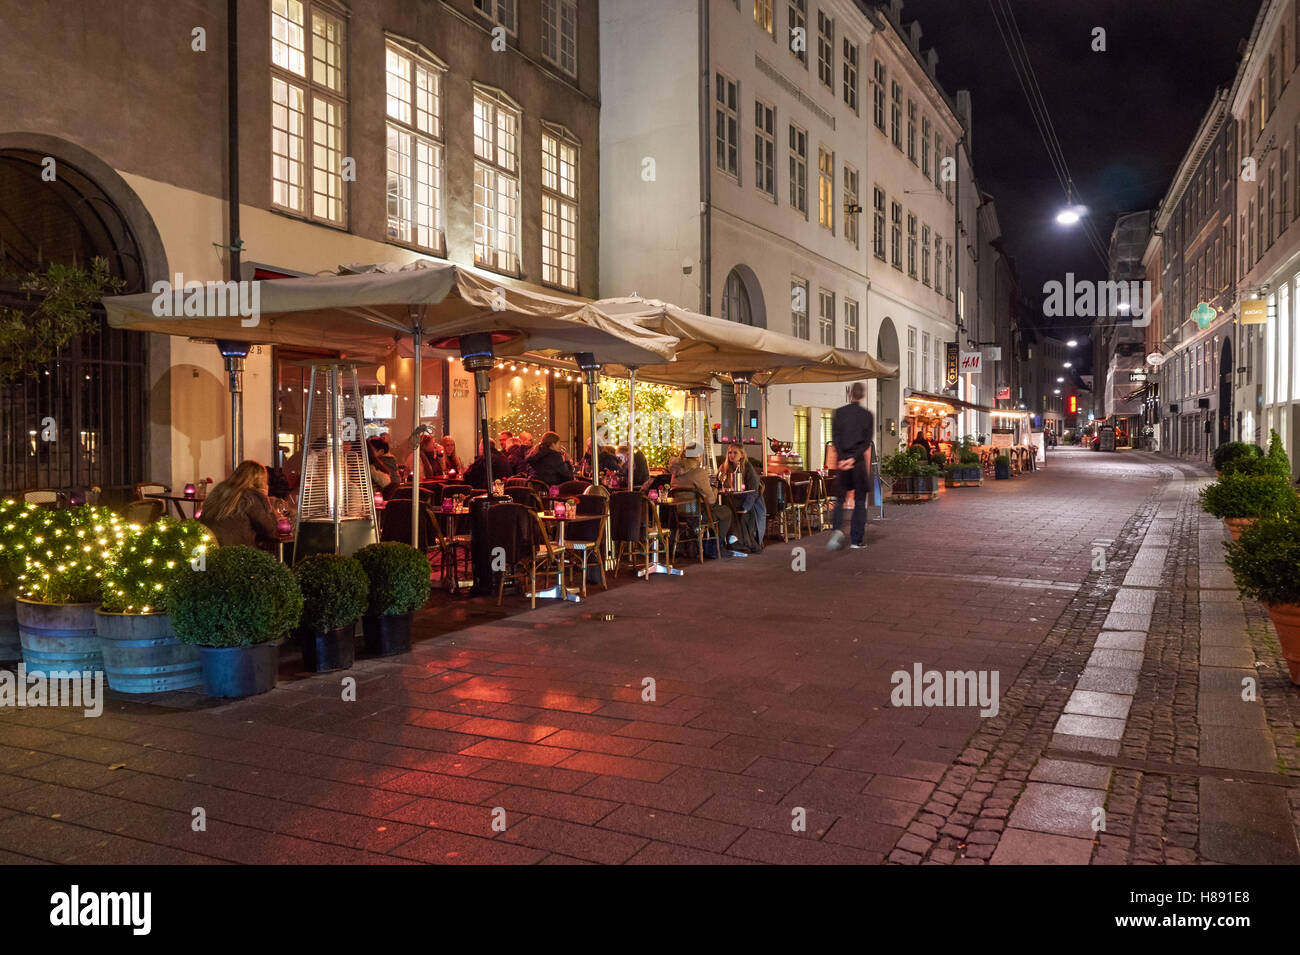 Restaurants on the Stroget shopping area in Copenhagen, Denmark Stock Photo